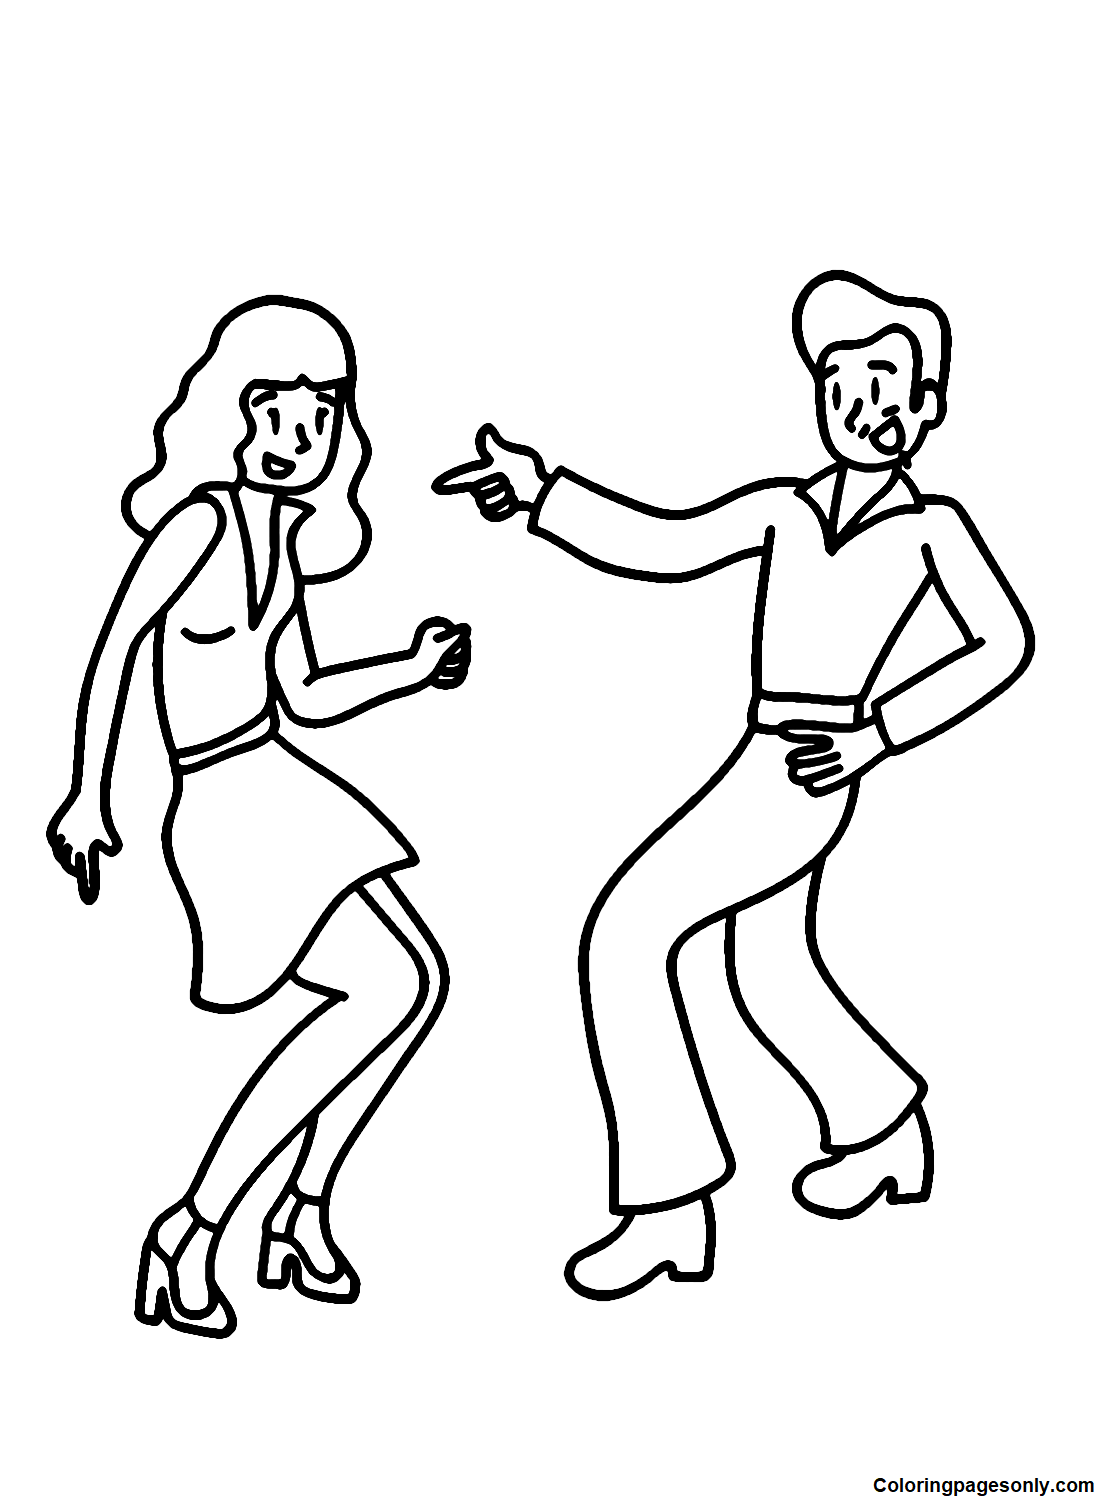 跳舞的情侣